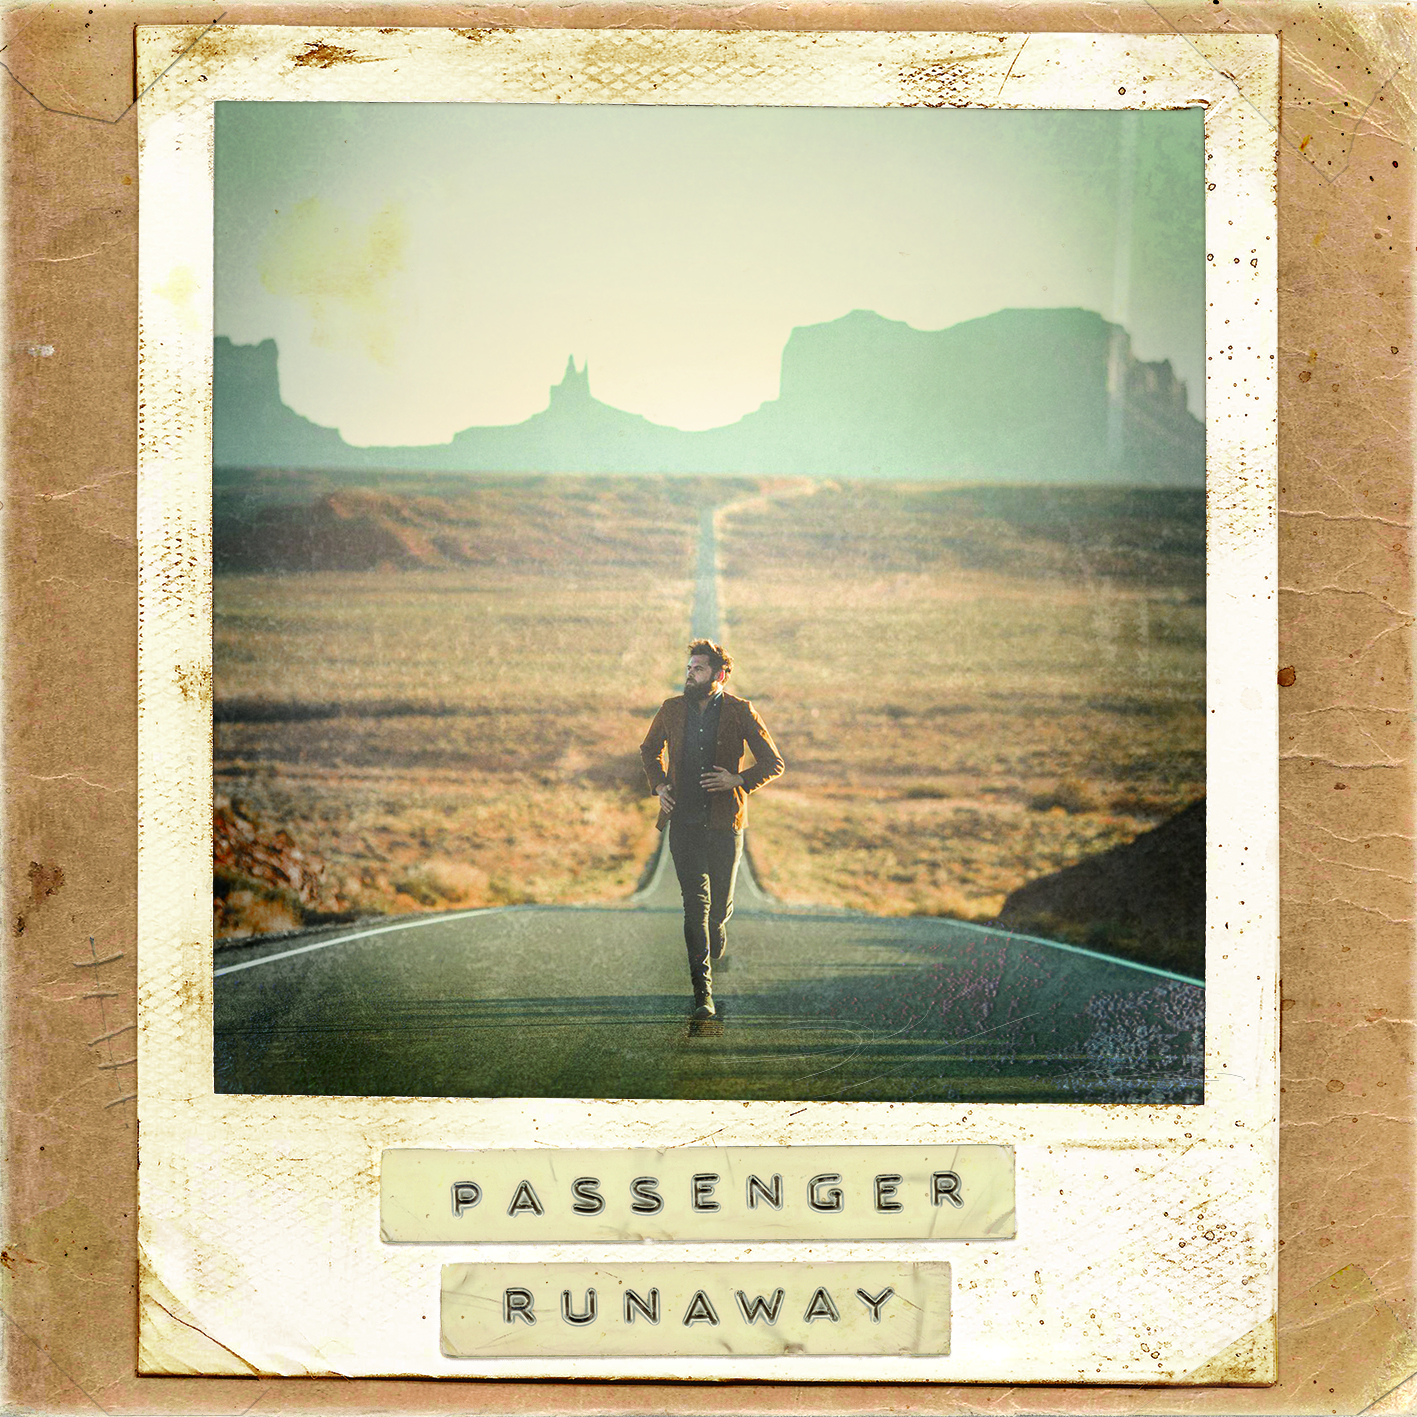 Passenger - Runaway (Deluxe CD) - 2xCD